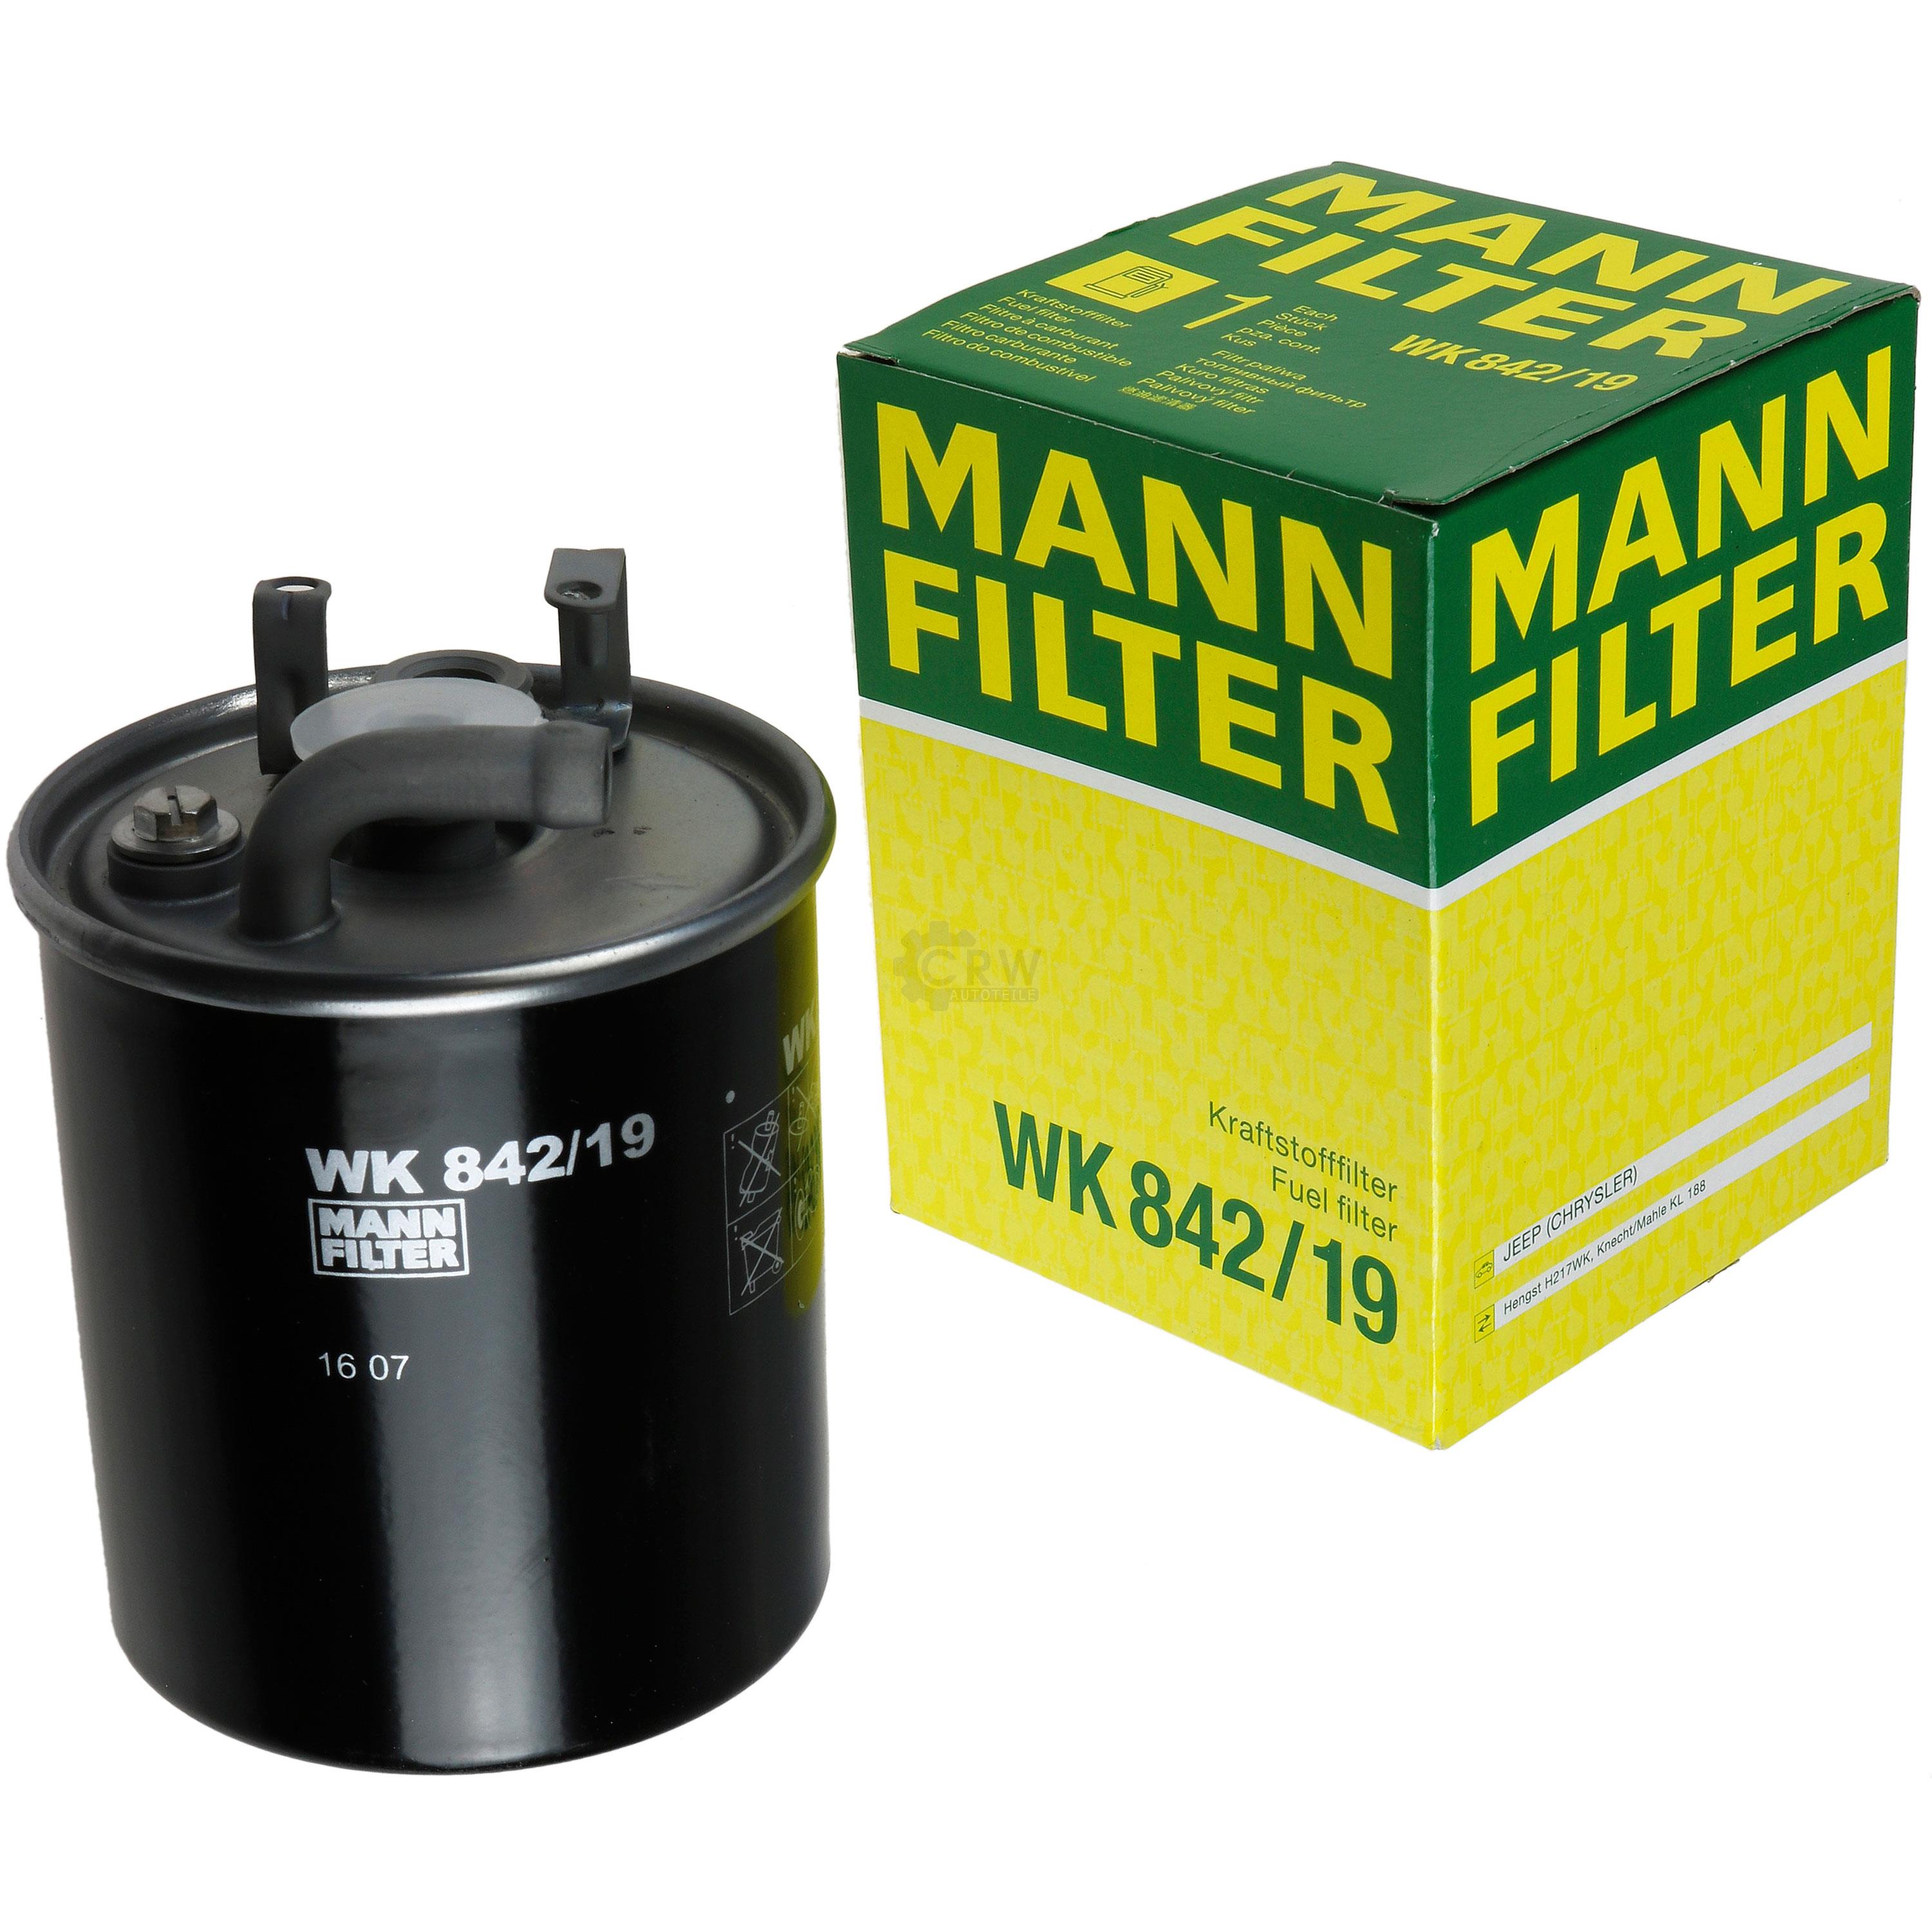 MANN-FILTER Kraftstofffilter WK 842/19 Fuel Filter